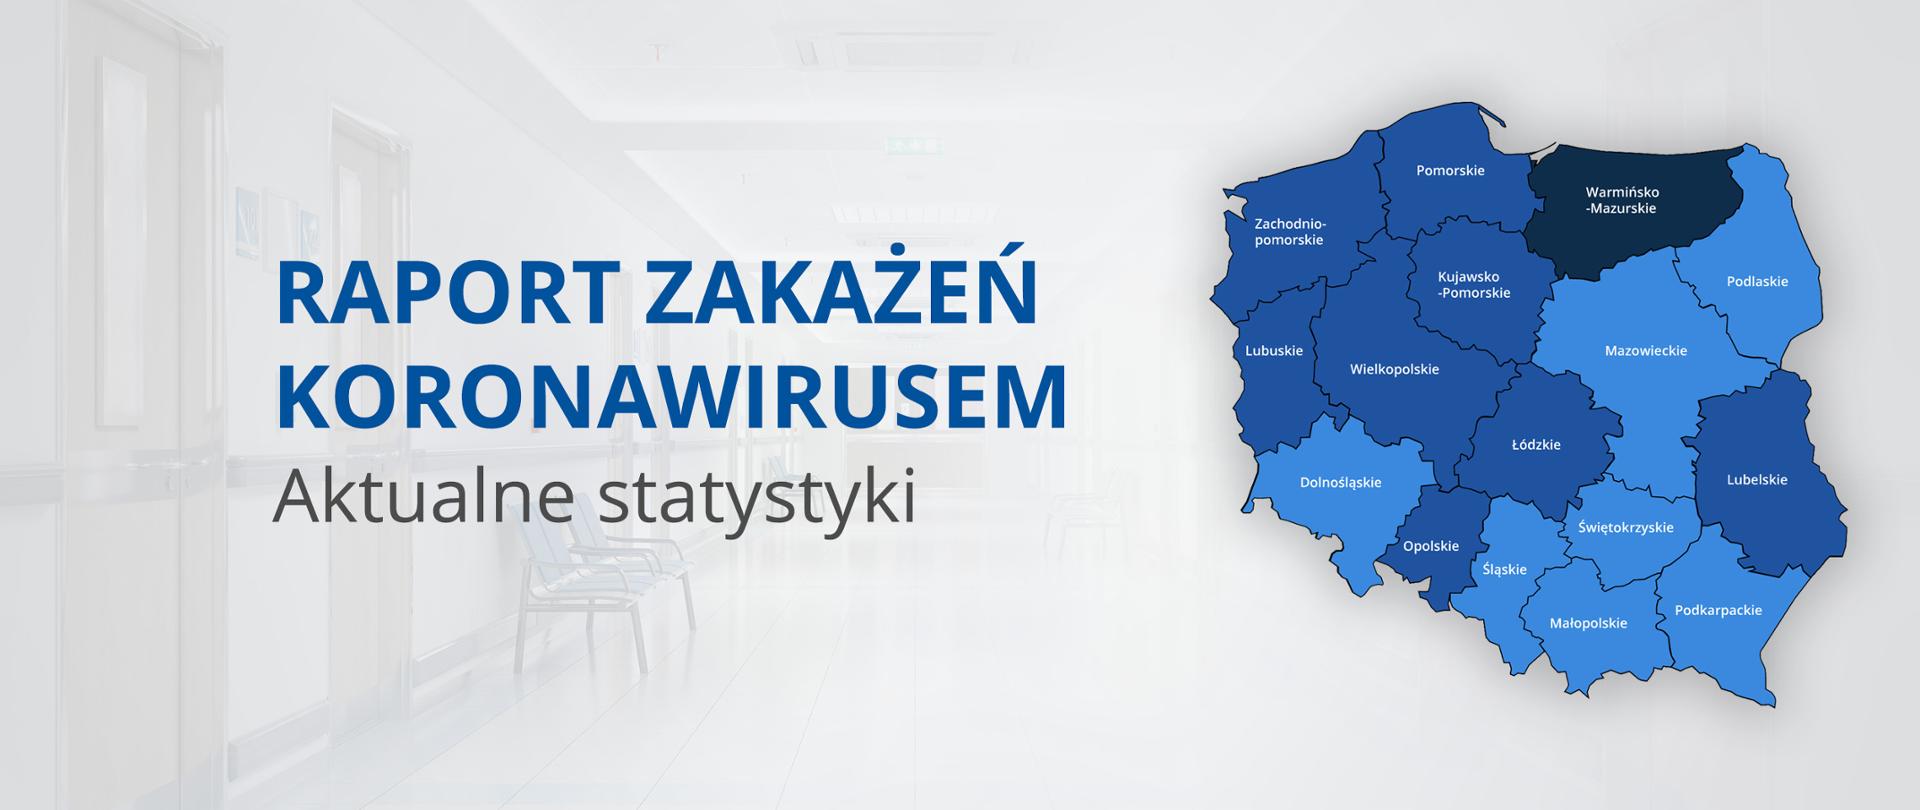 Raport zakażeń Koronawirusem Aktualne statystyki Mapa z podziałem na województwa